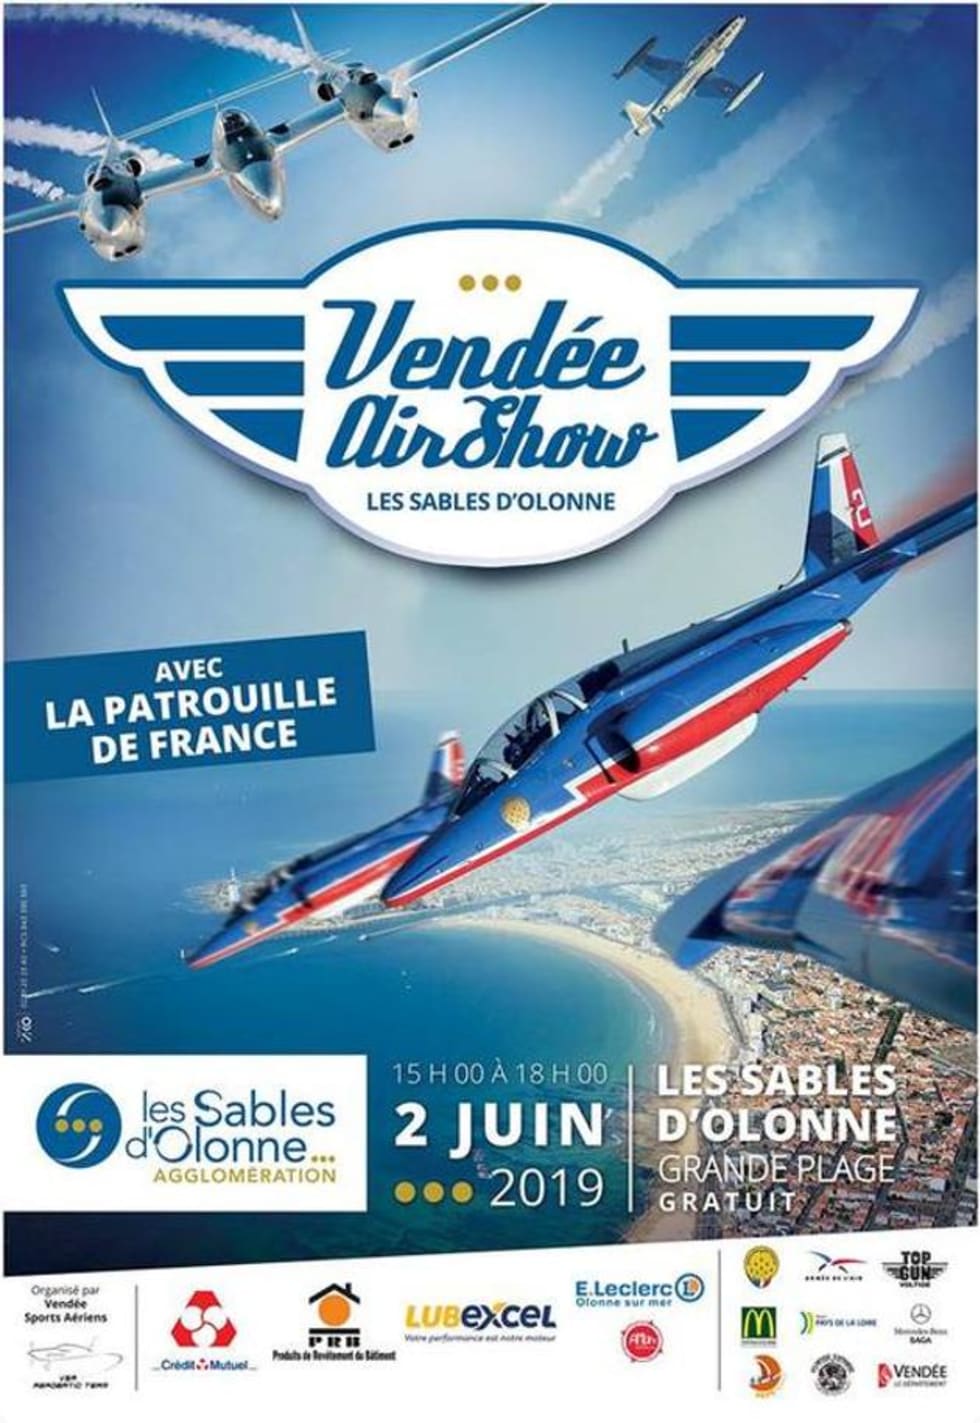 Meeting Vendée Air Show